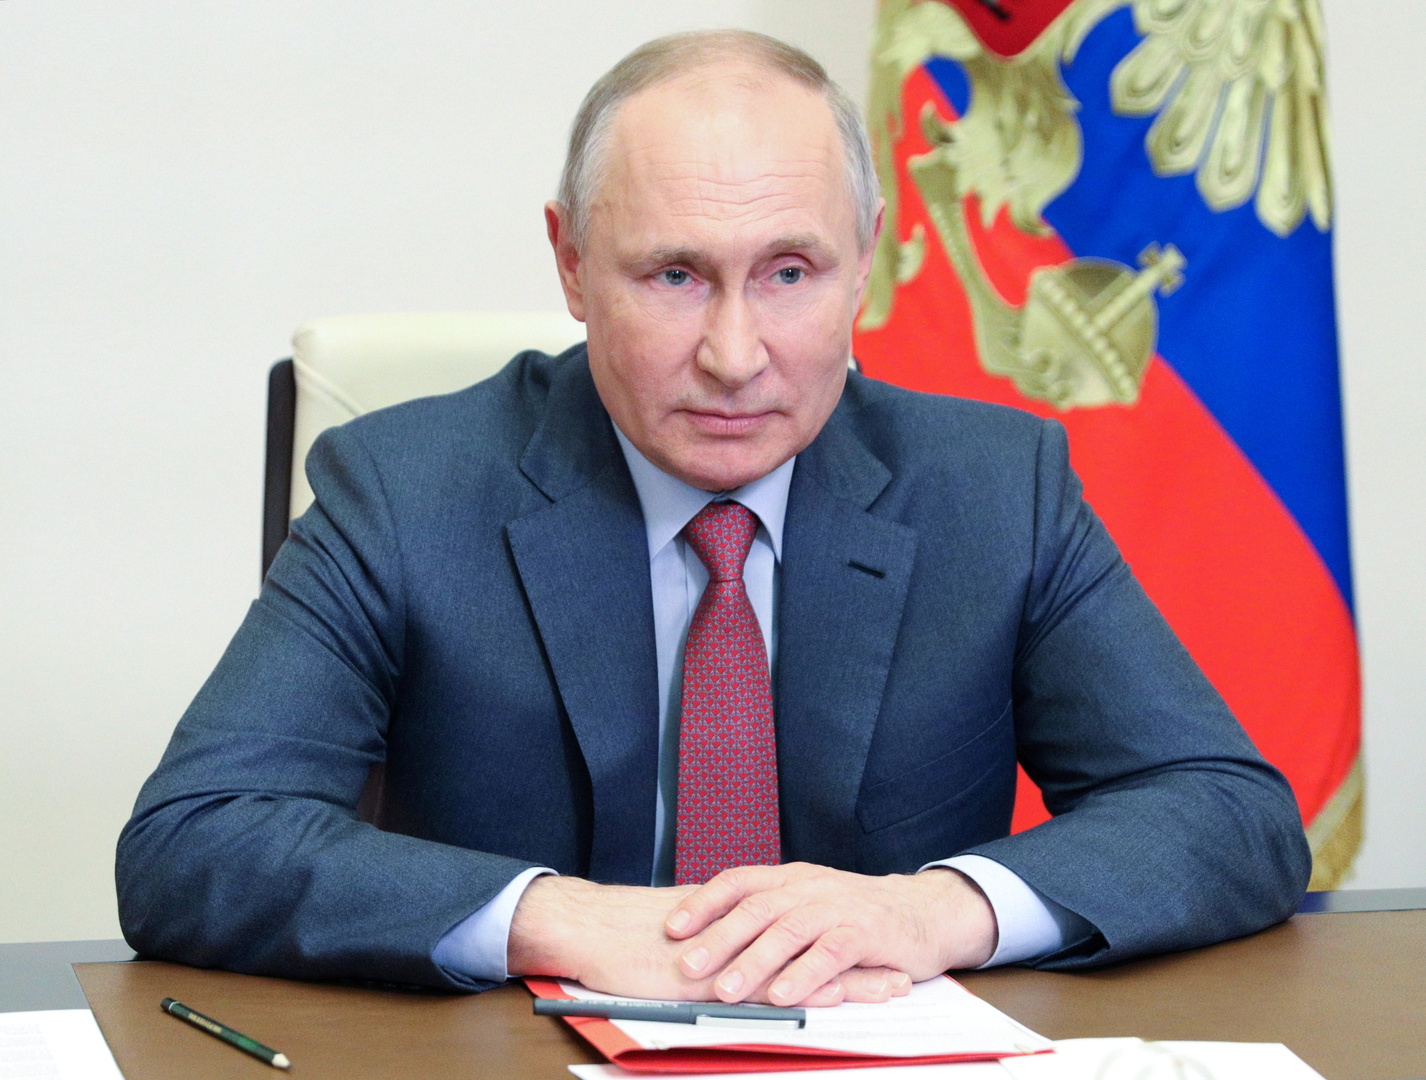 بوتين يؤكد معارضته لجعل التطعيم ضد فيروس كورونا إلزاميا